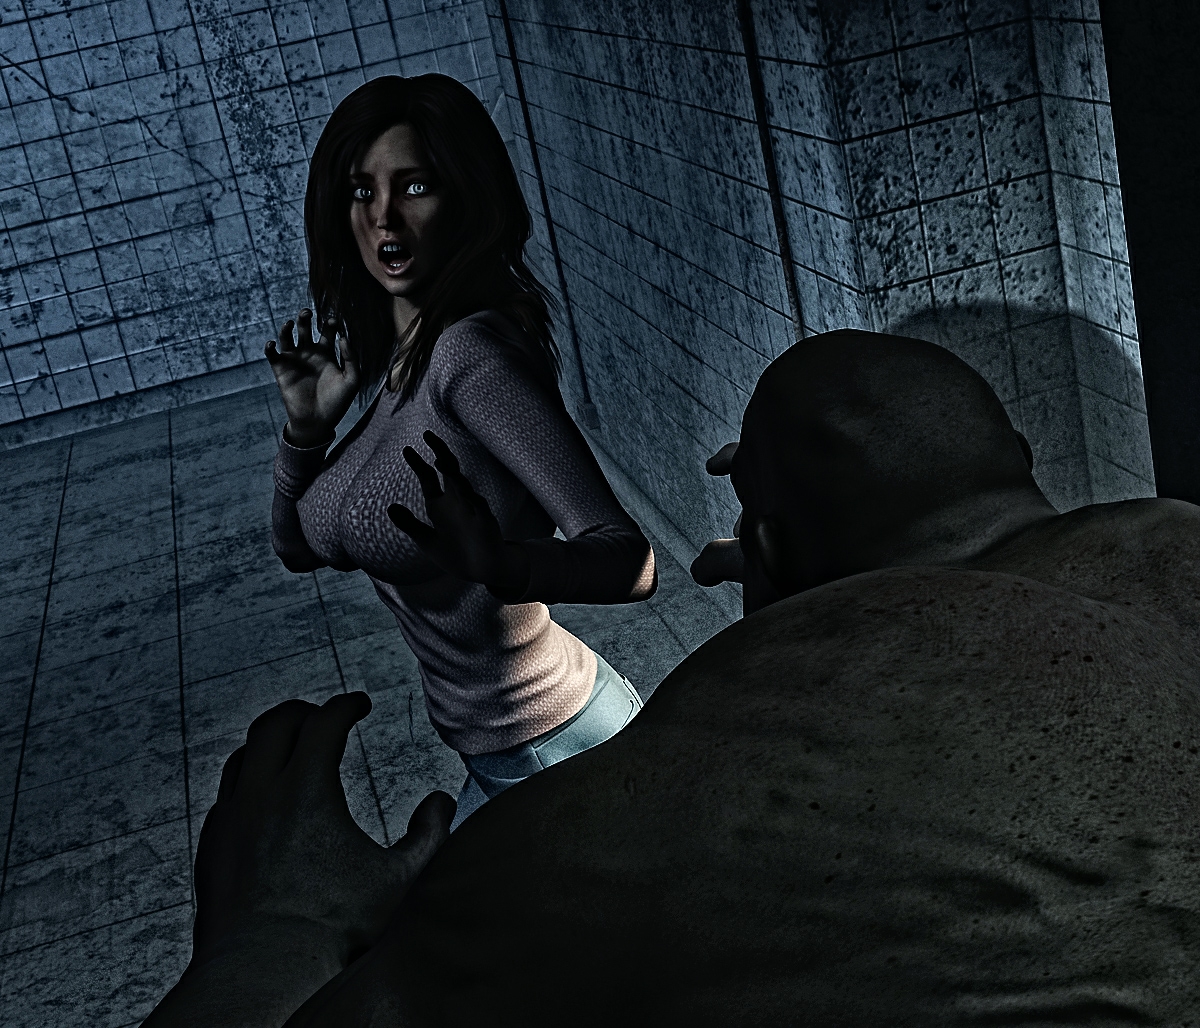 Darkseid6911-The Asylum episode 1